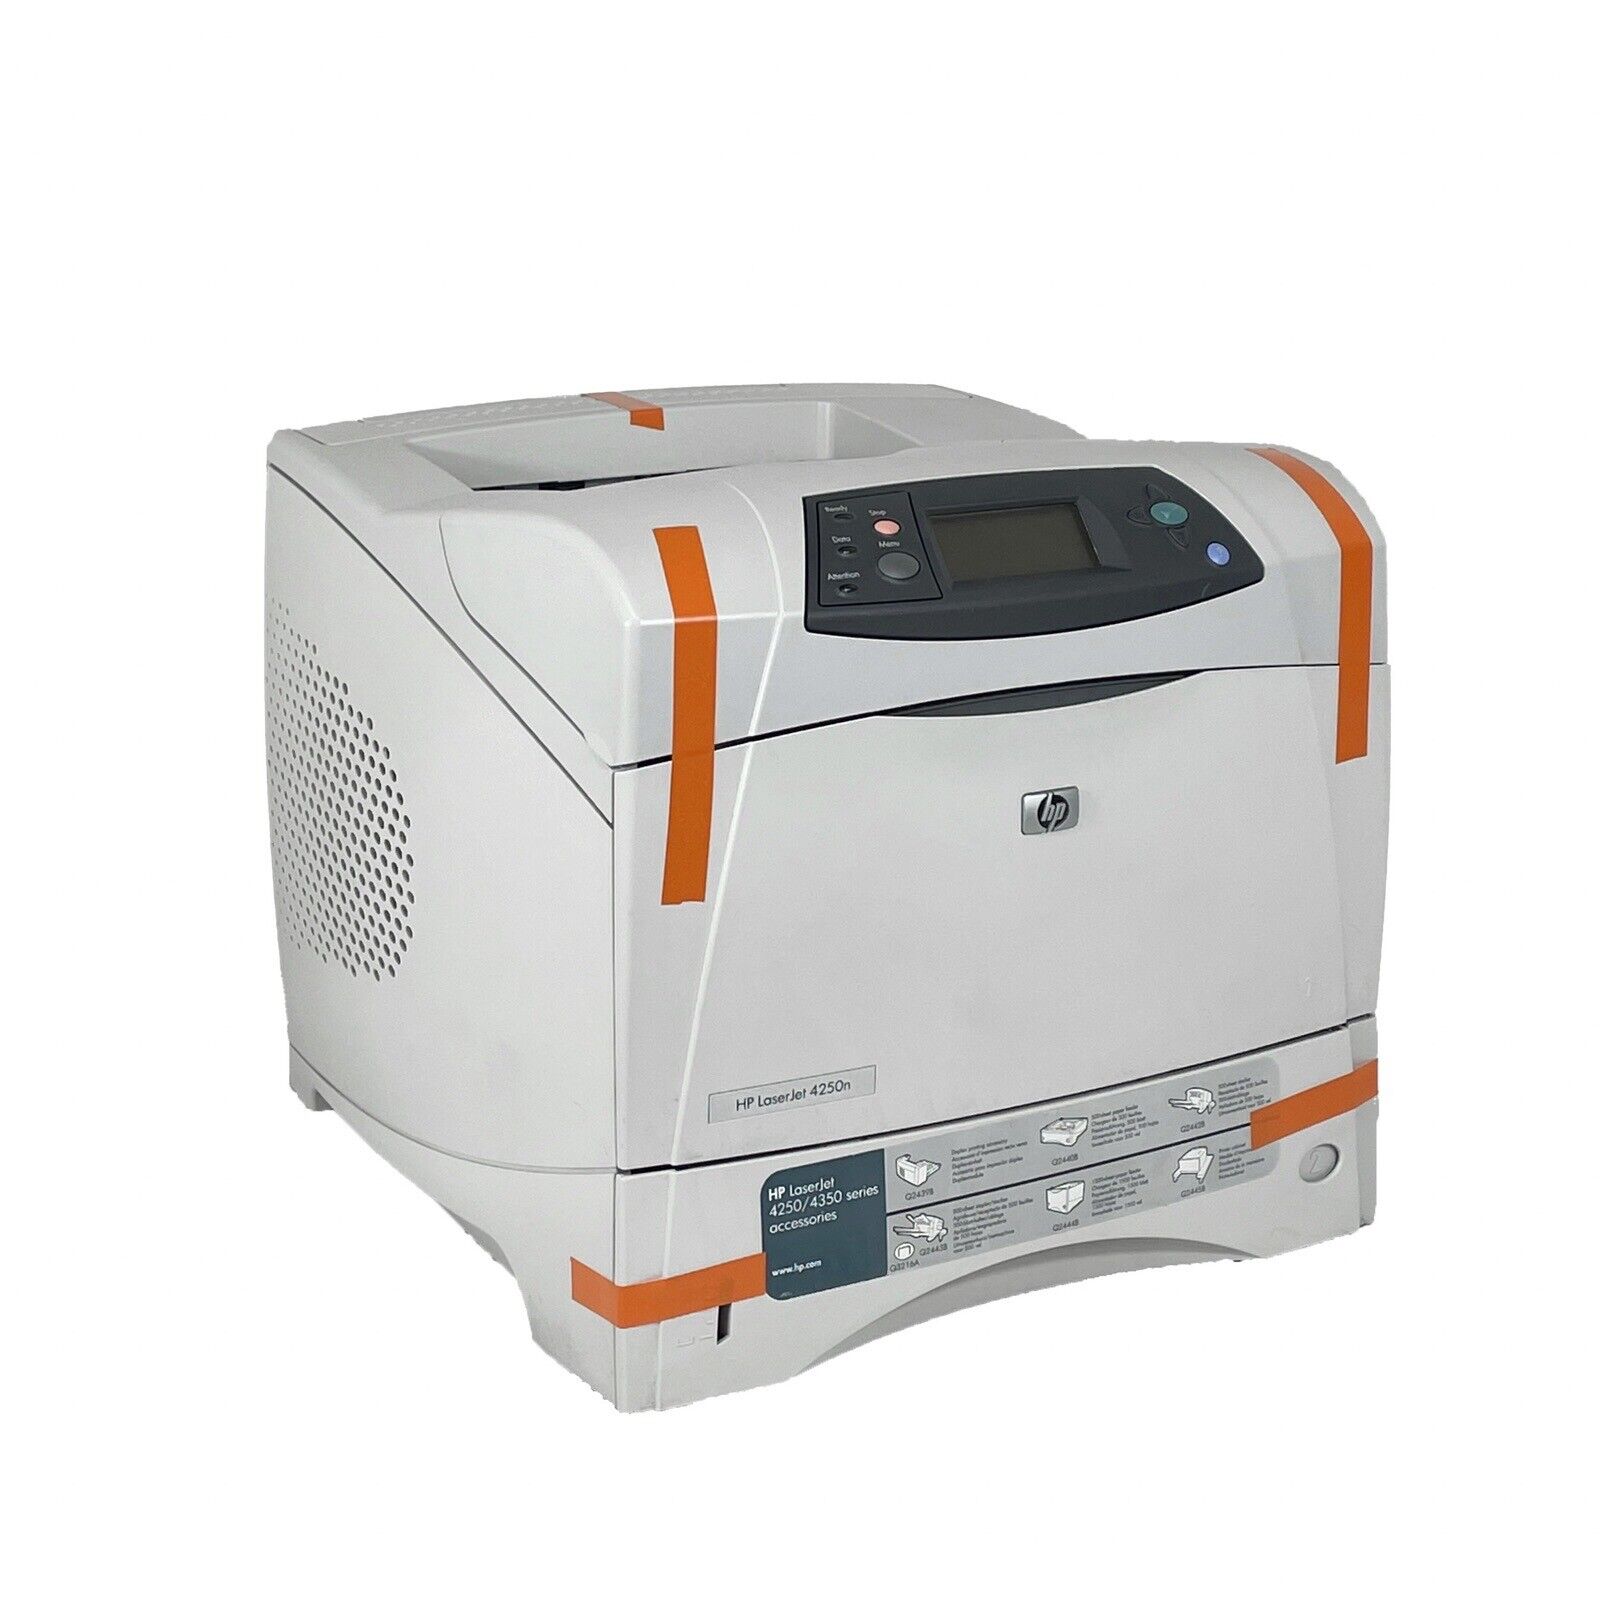 HP LaserJet 4250n Network Workgroup Laser Printer Q5401A